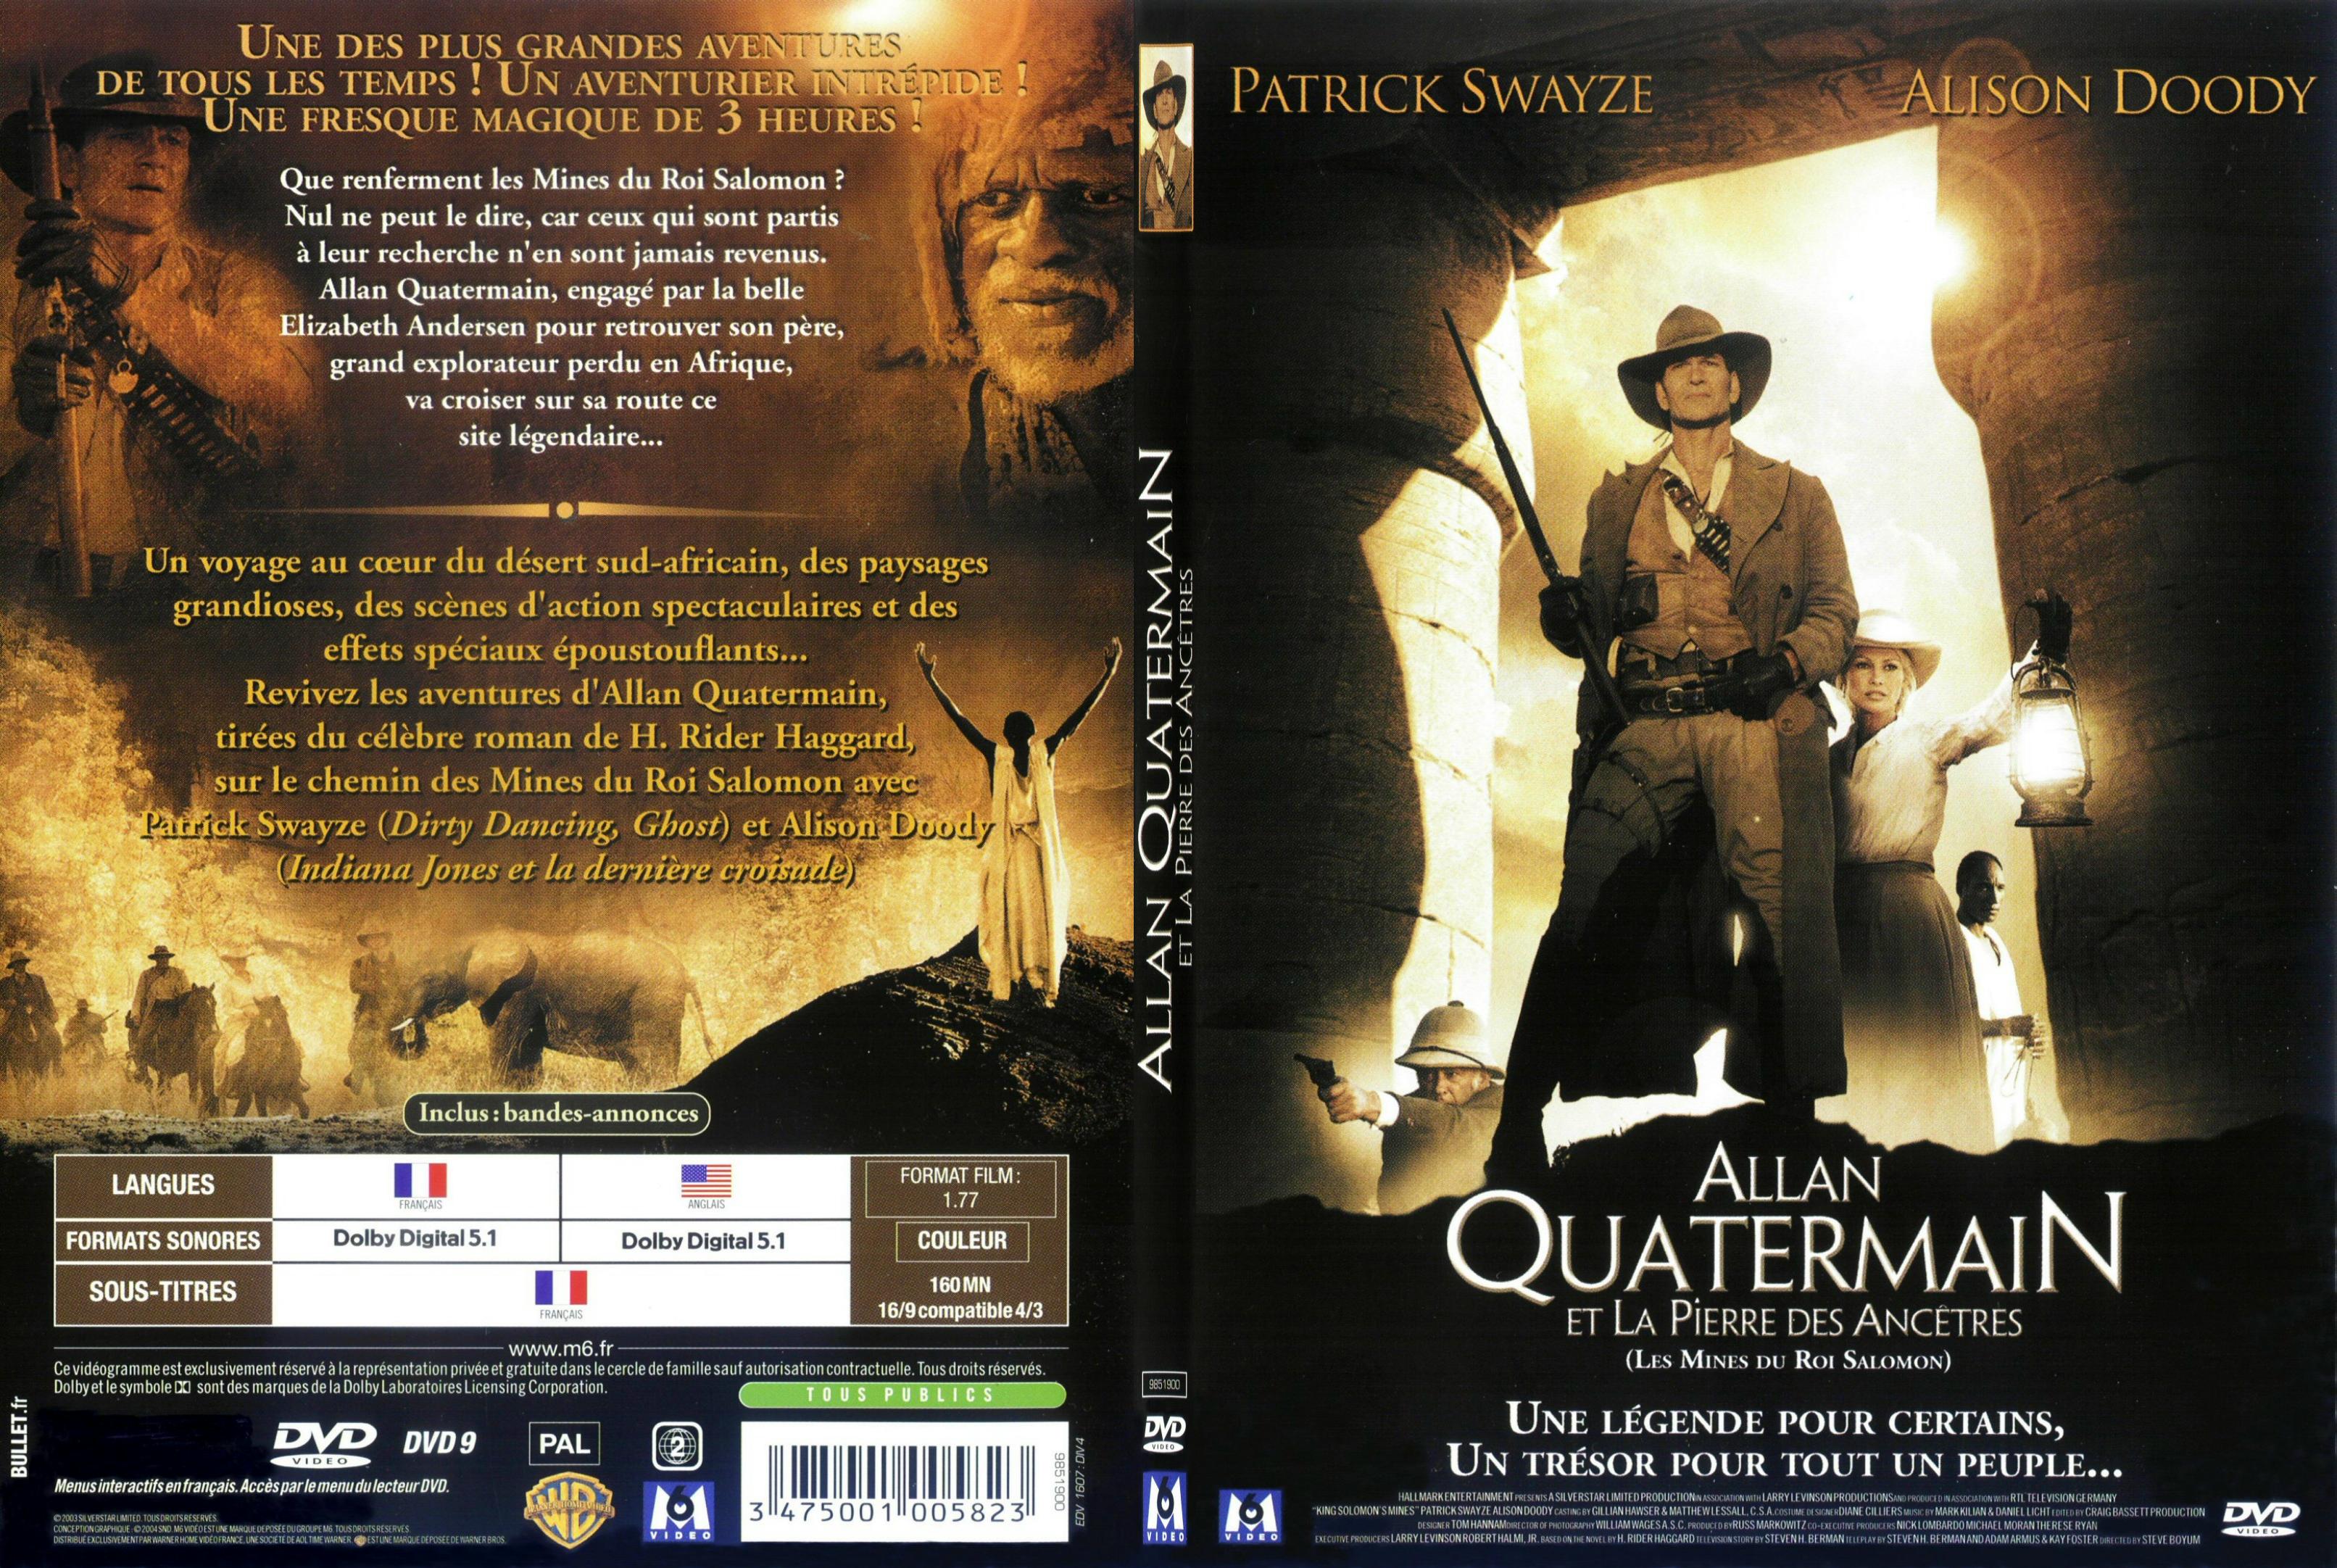 Jaquette DVD Allan Quatermain et la pierre des ancetres - SLIM